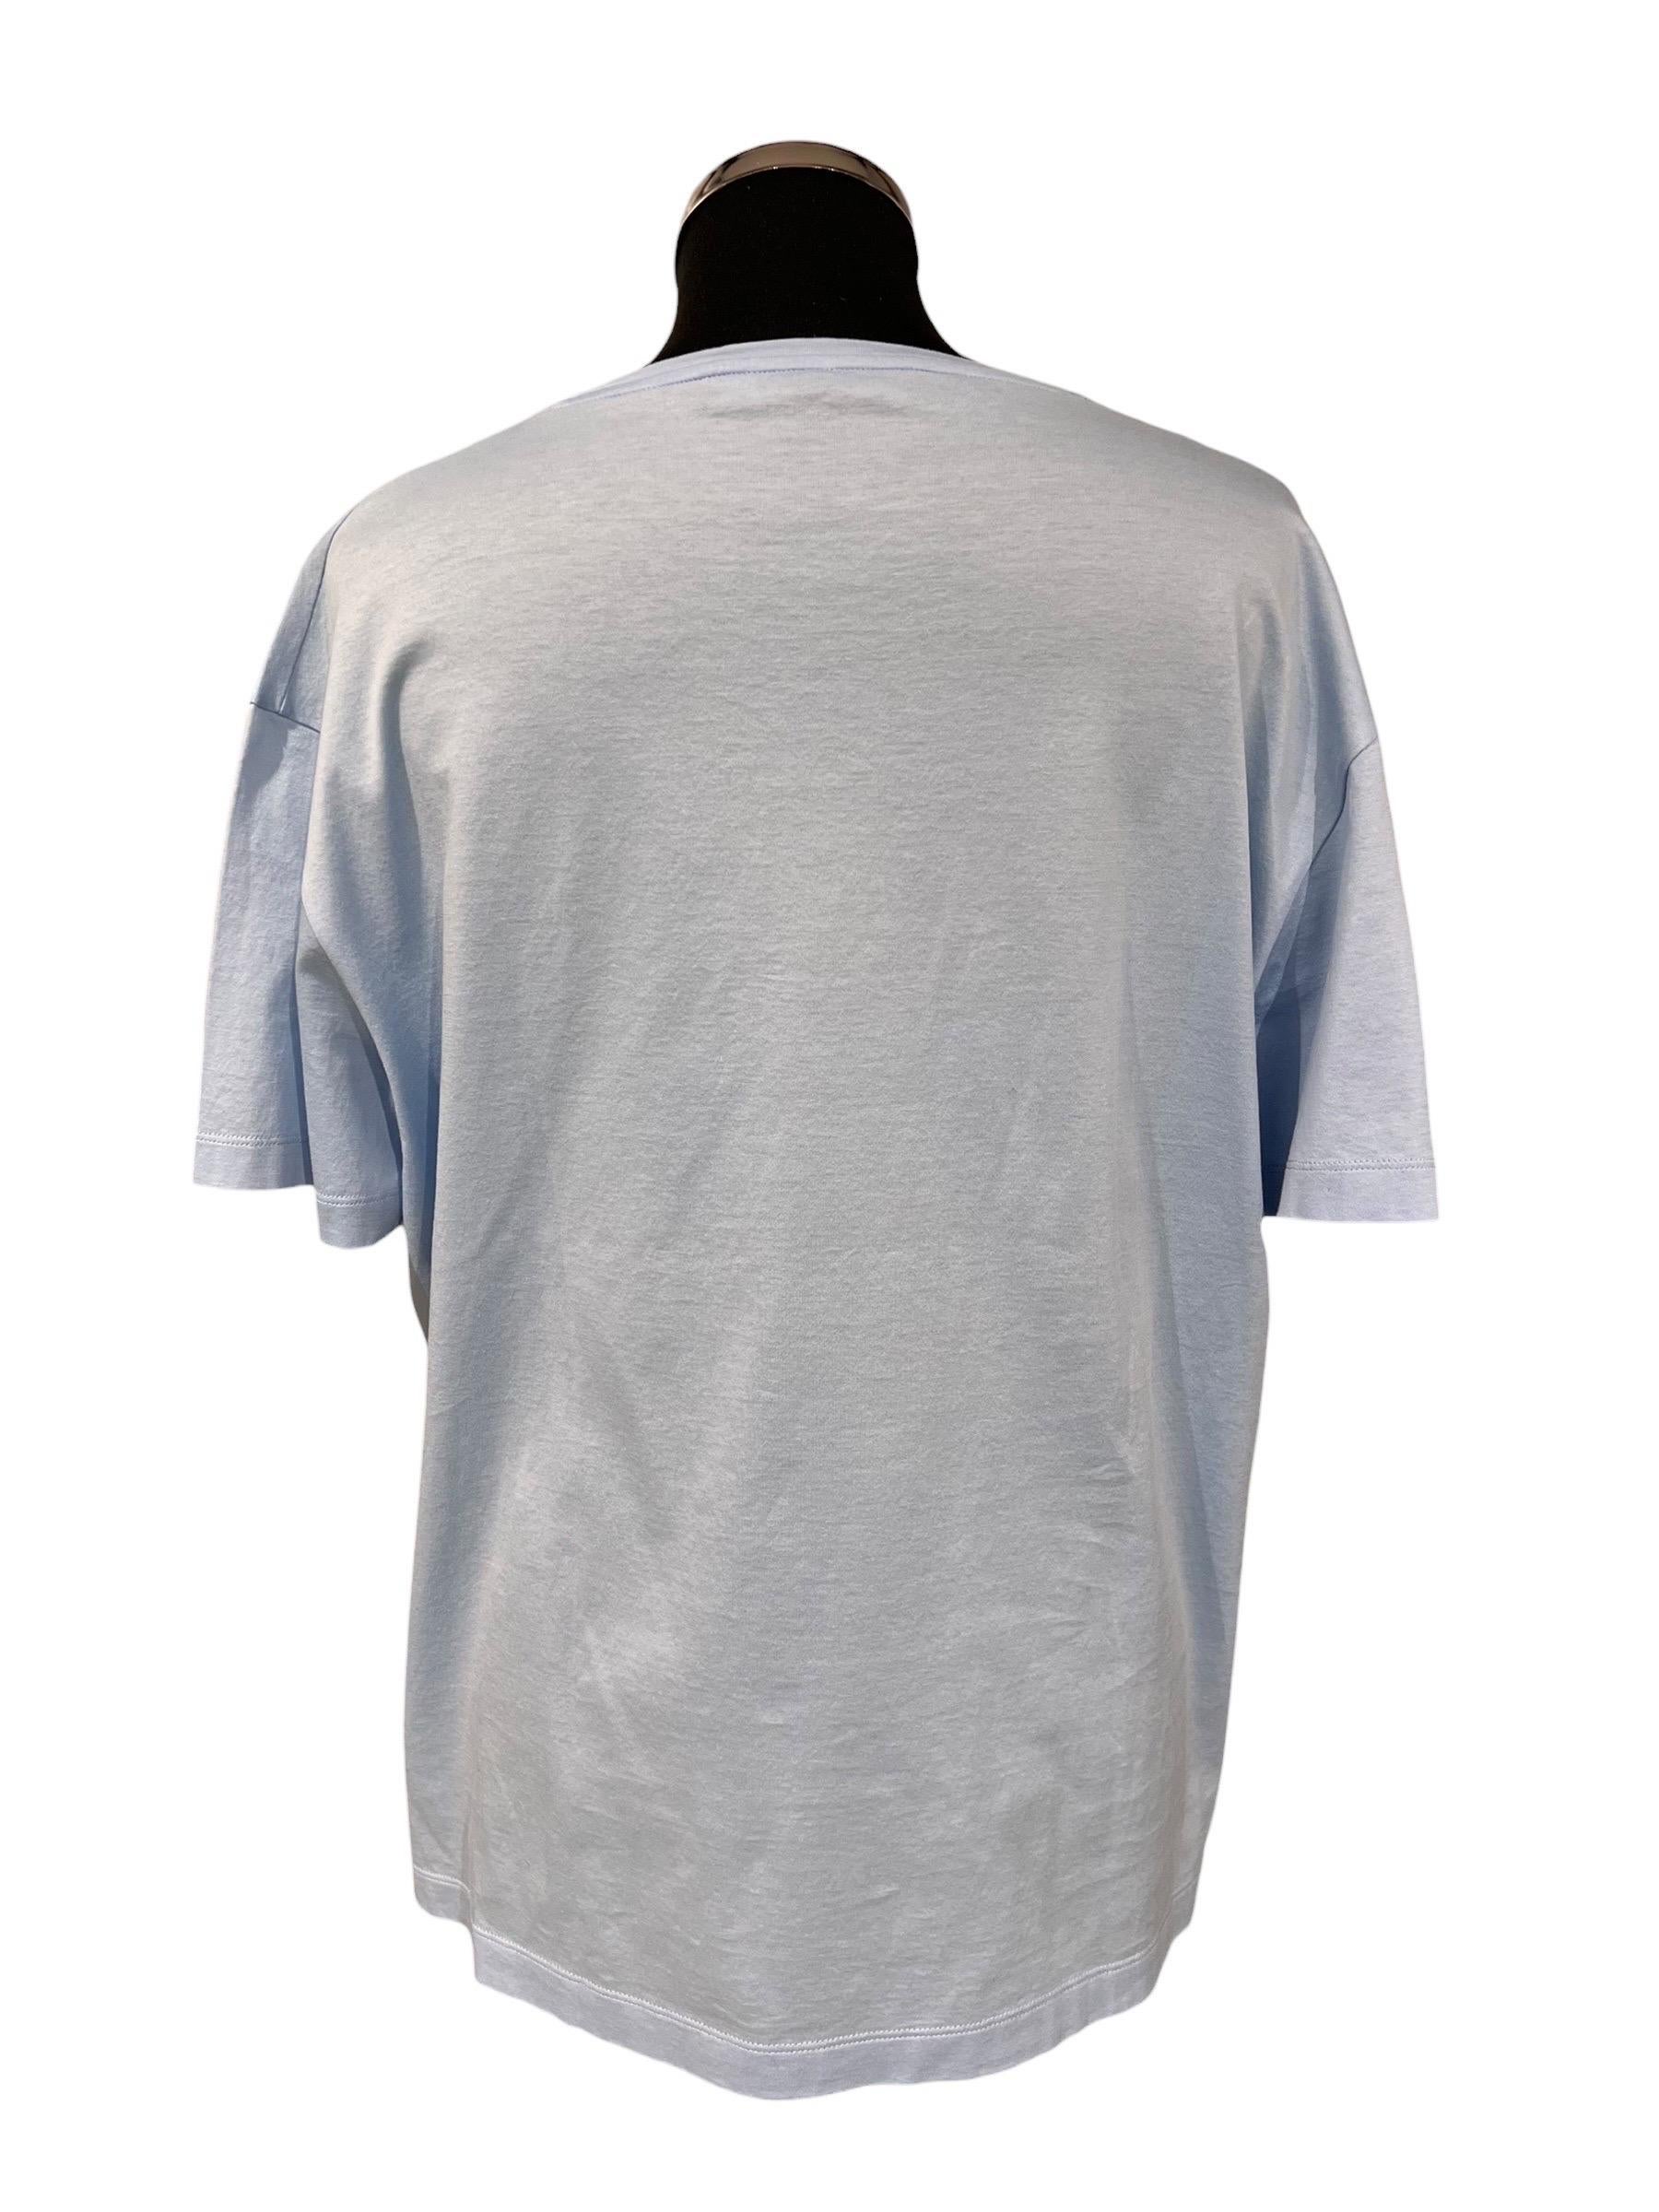 T-Shirt firmata Versace, realizzata in cotone di colore celeste con logo del brand in rilievo ricamato di colore bianco sulla parte frontale. Taglia